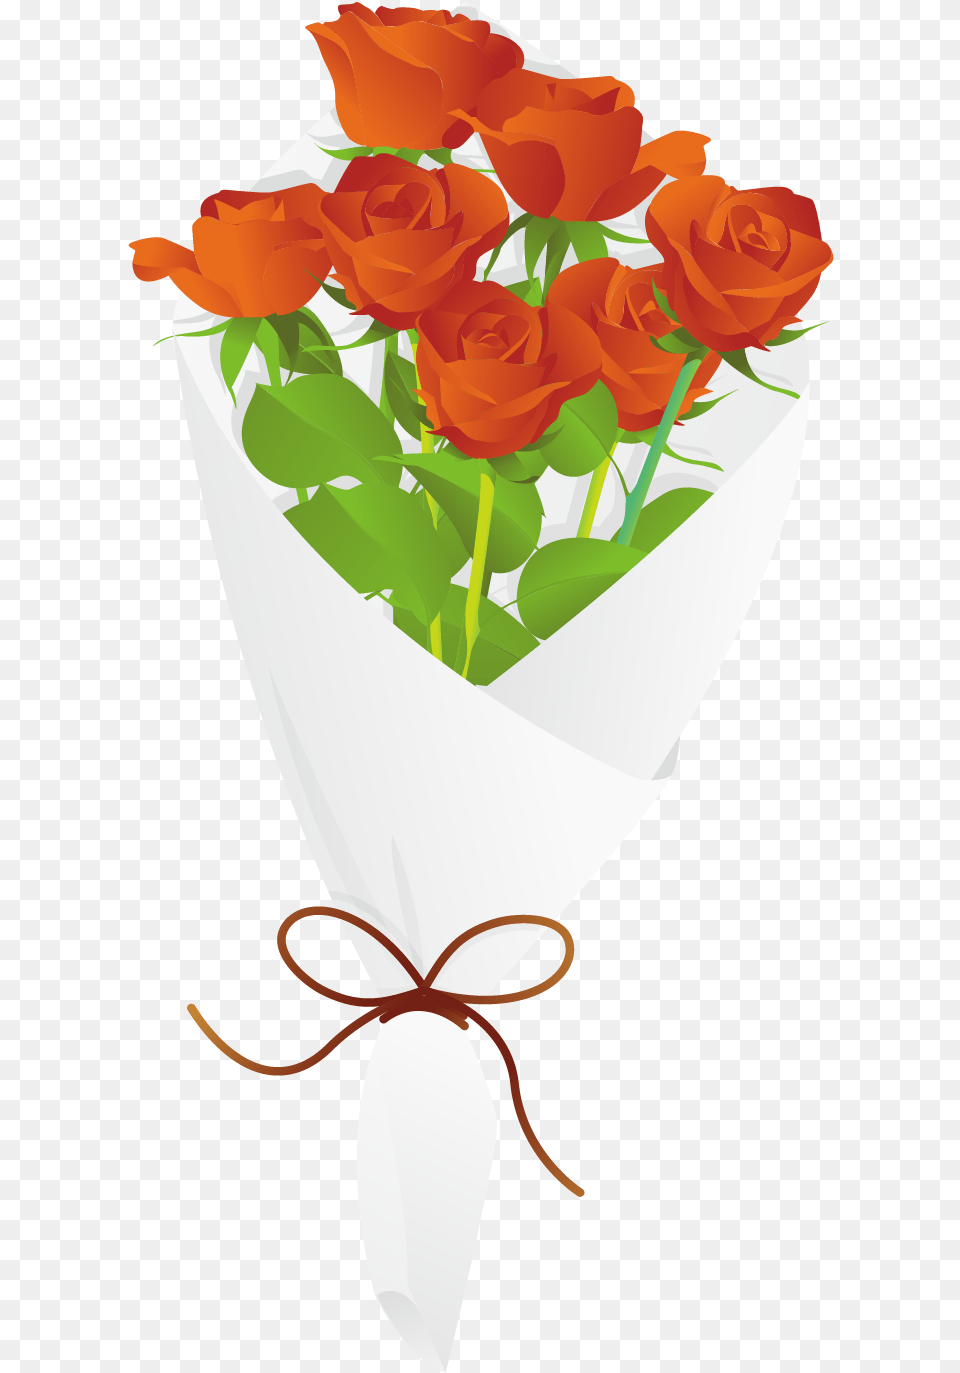 Image, Plant, Rose, Flower, Flower Arrangement Png